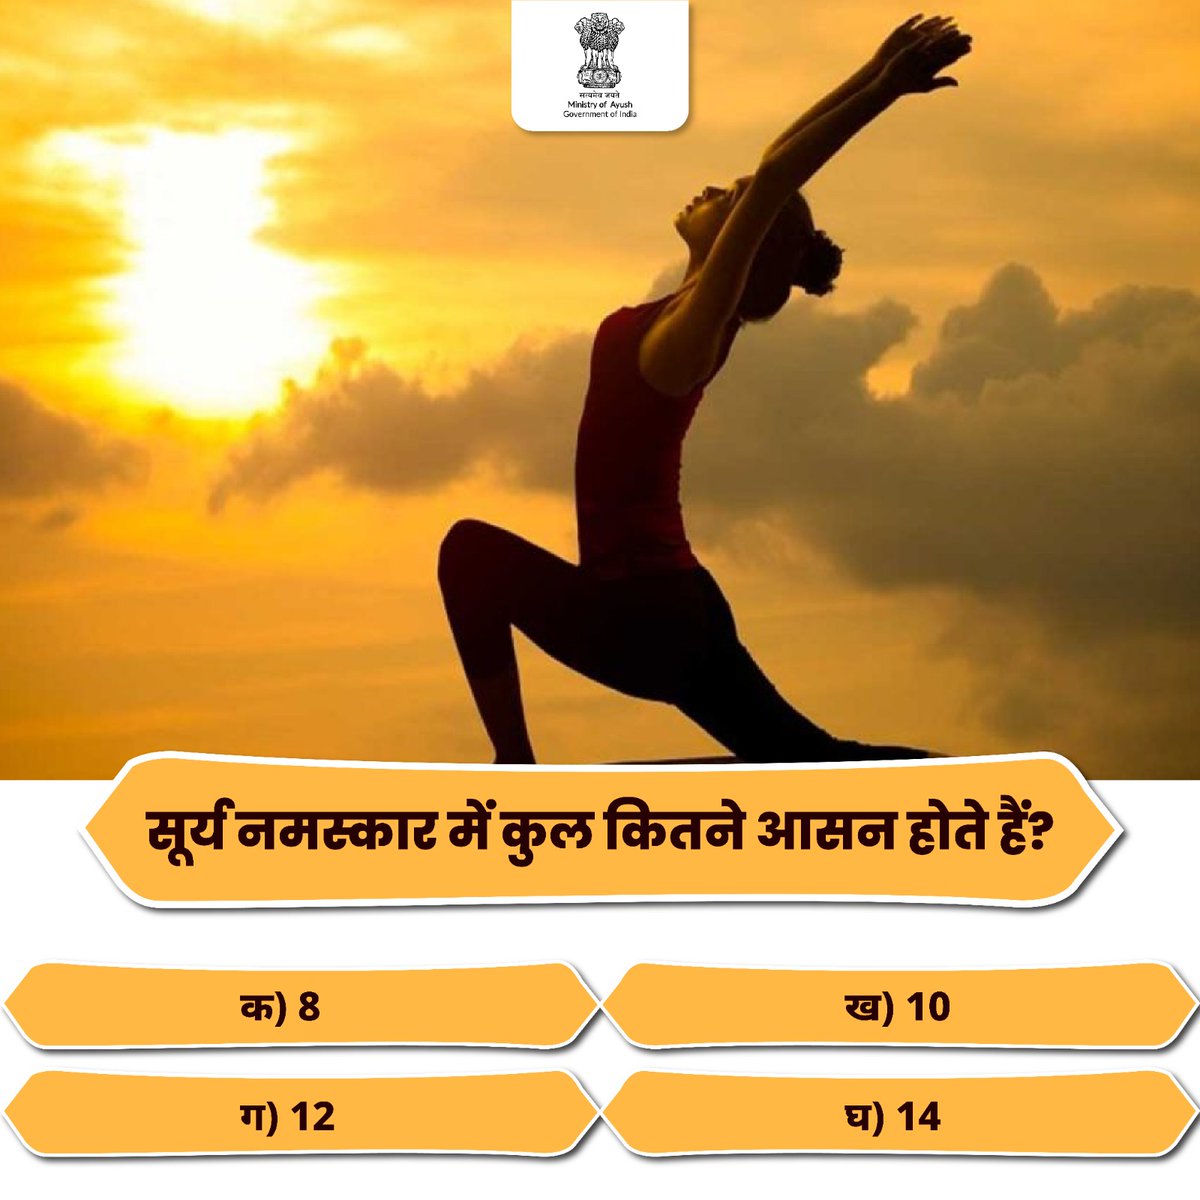 क्या आप इस सवाल का जवाब जानते हैं? कमेंट करके बताएं।

#AyushQuiz #IDY2024 #YogaDay #InternationalDayOfYoga #Suryanamaskar